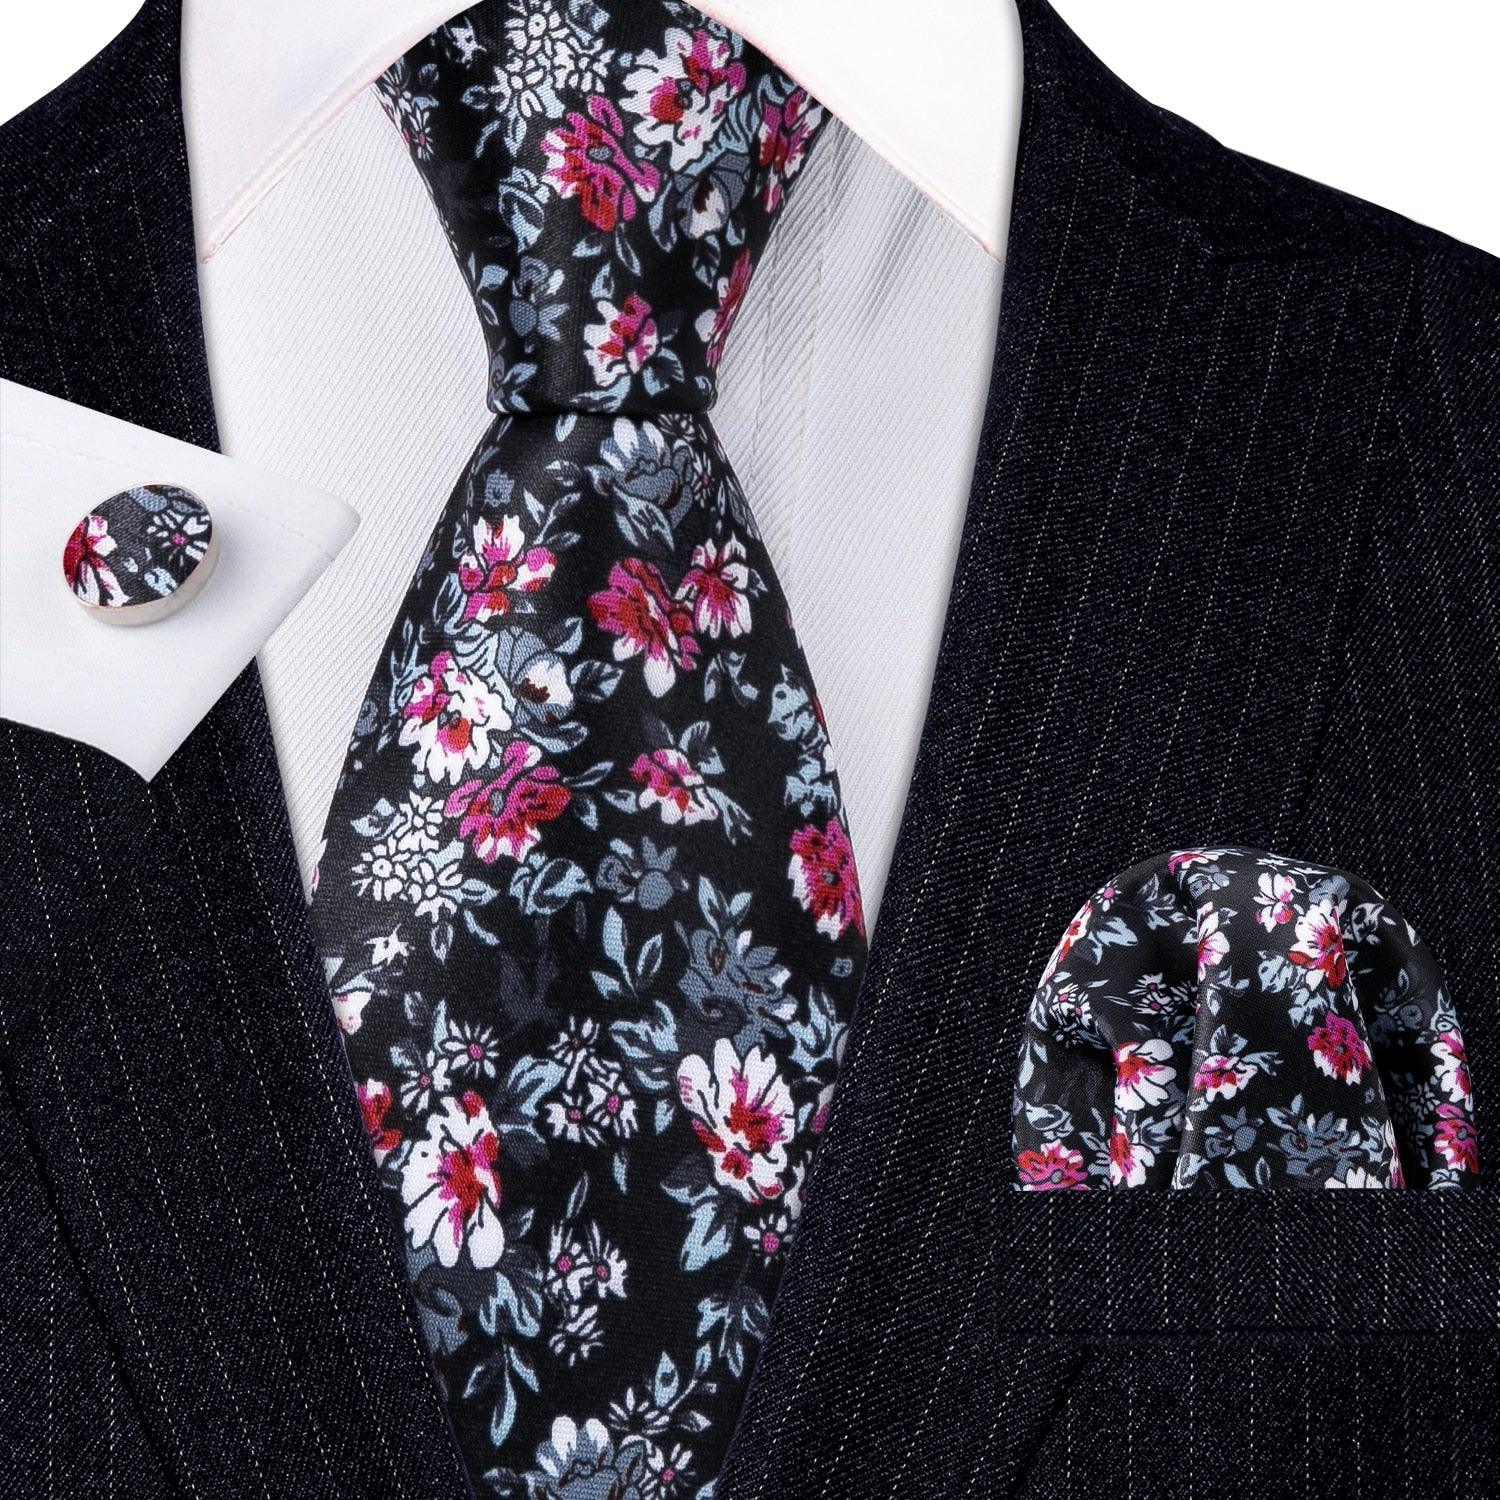 Black Floral Silk Tie Pocket Square Cufflink Set - STYLETIE